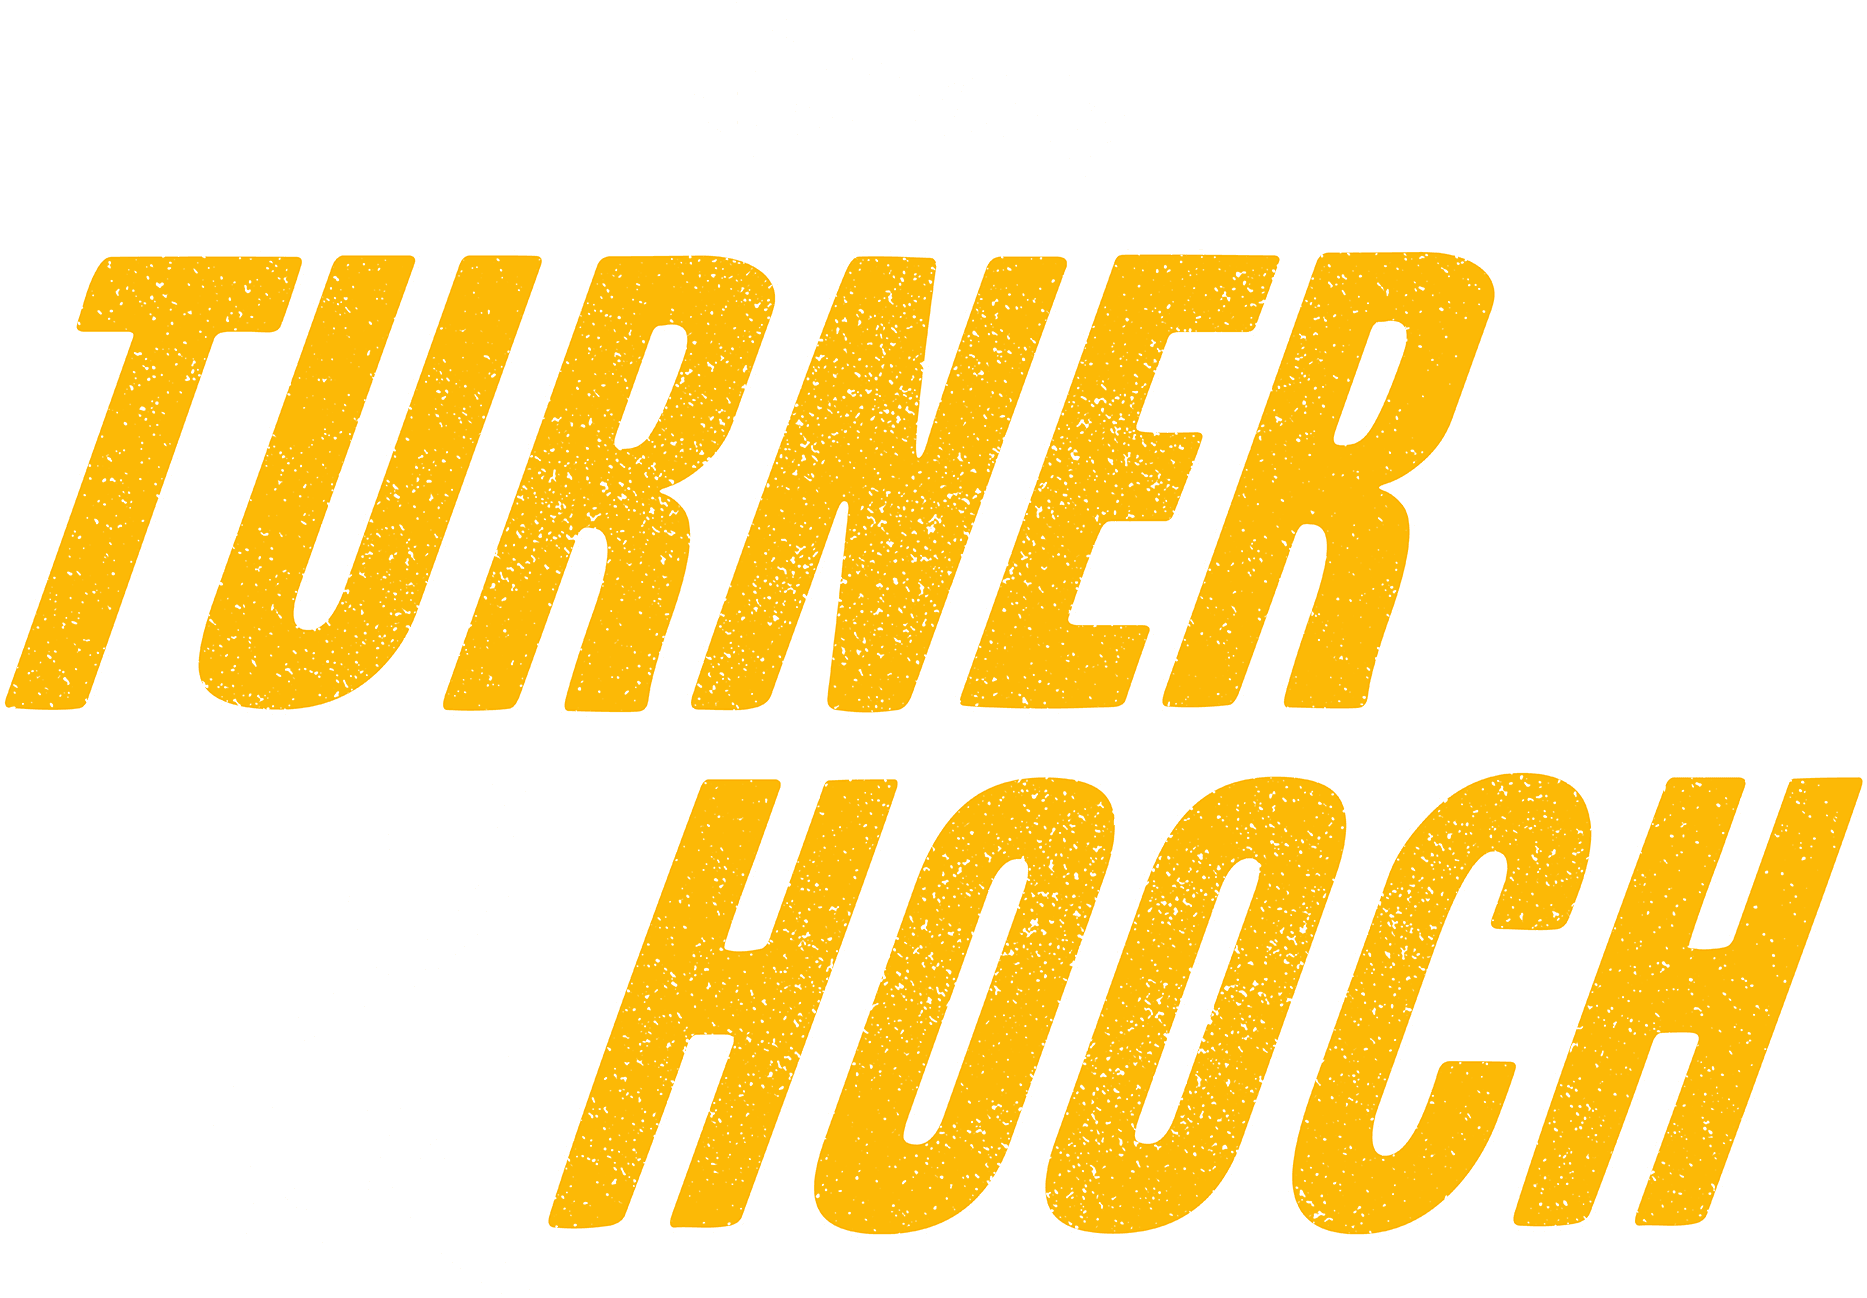 Turner & Hooch logo